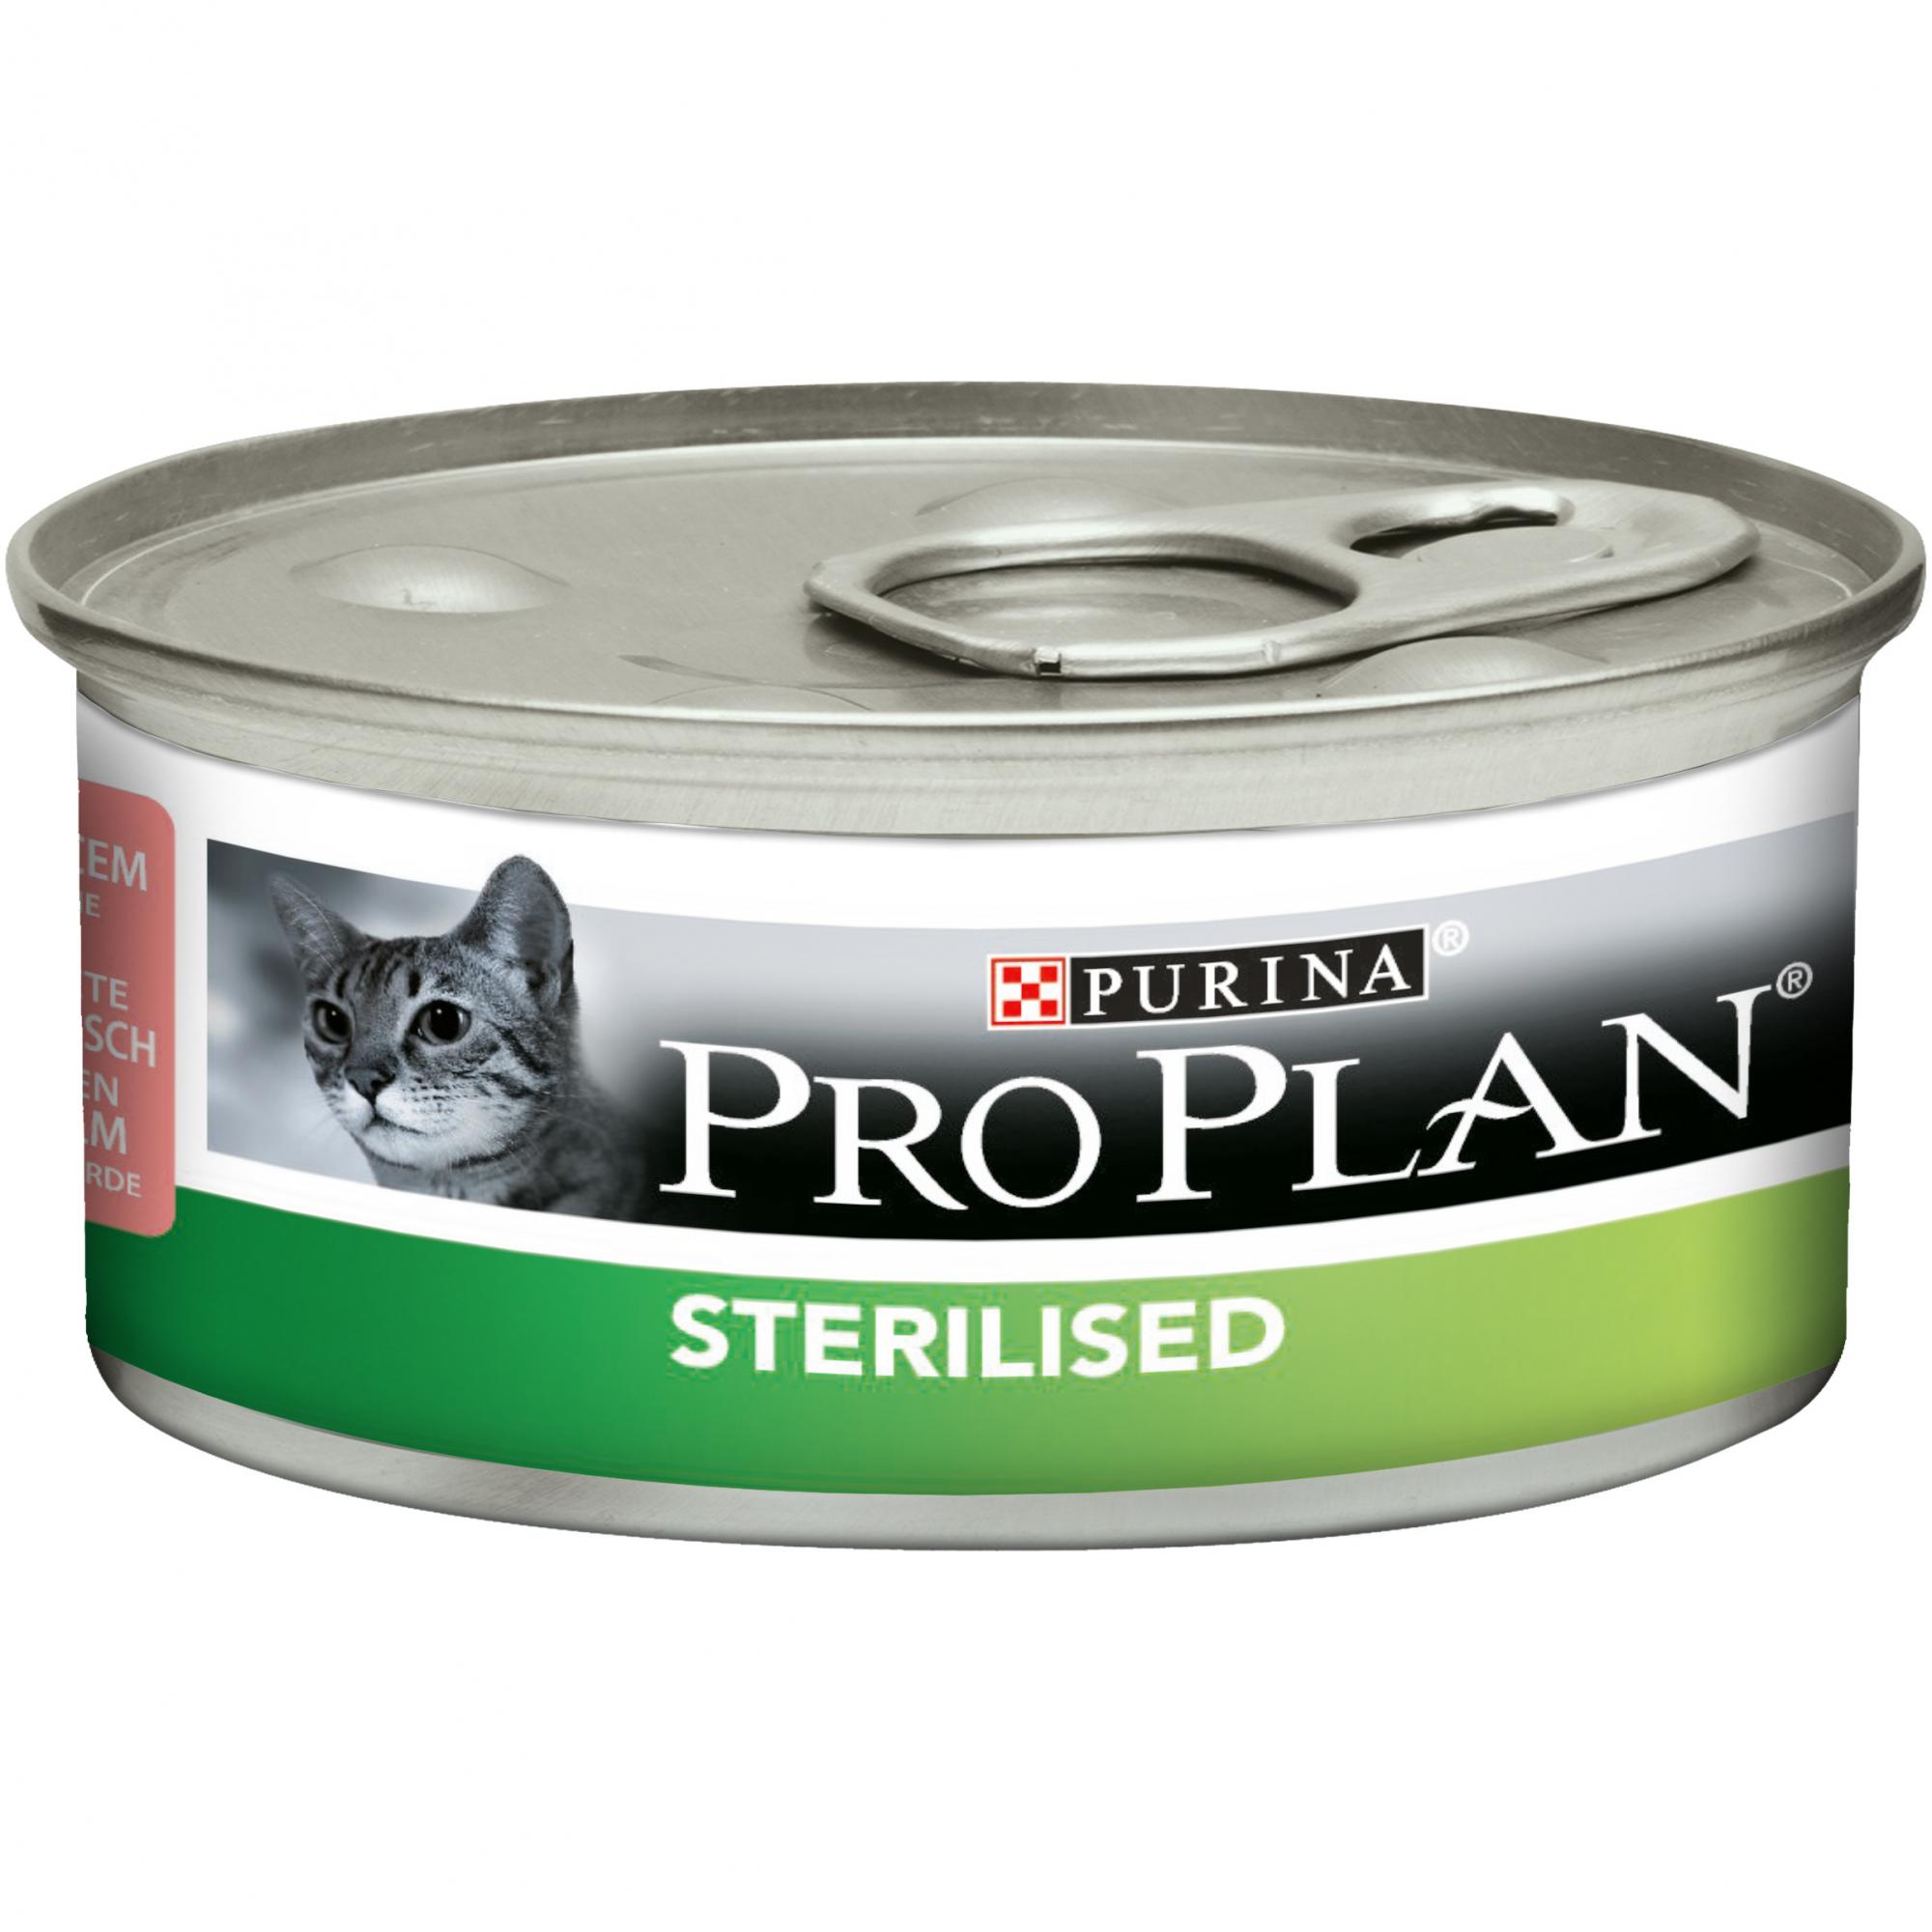 Pro plan sterilised влажный. Purina Pro Plan Sterilised консервы. Консервы для кошек Pro Plan Sterilised. Паштет Пурина Проплан для стерилизованных кошек. Проплан консервы для стерилизованных кошек.